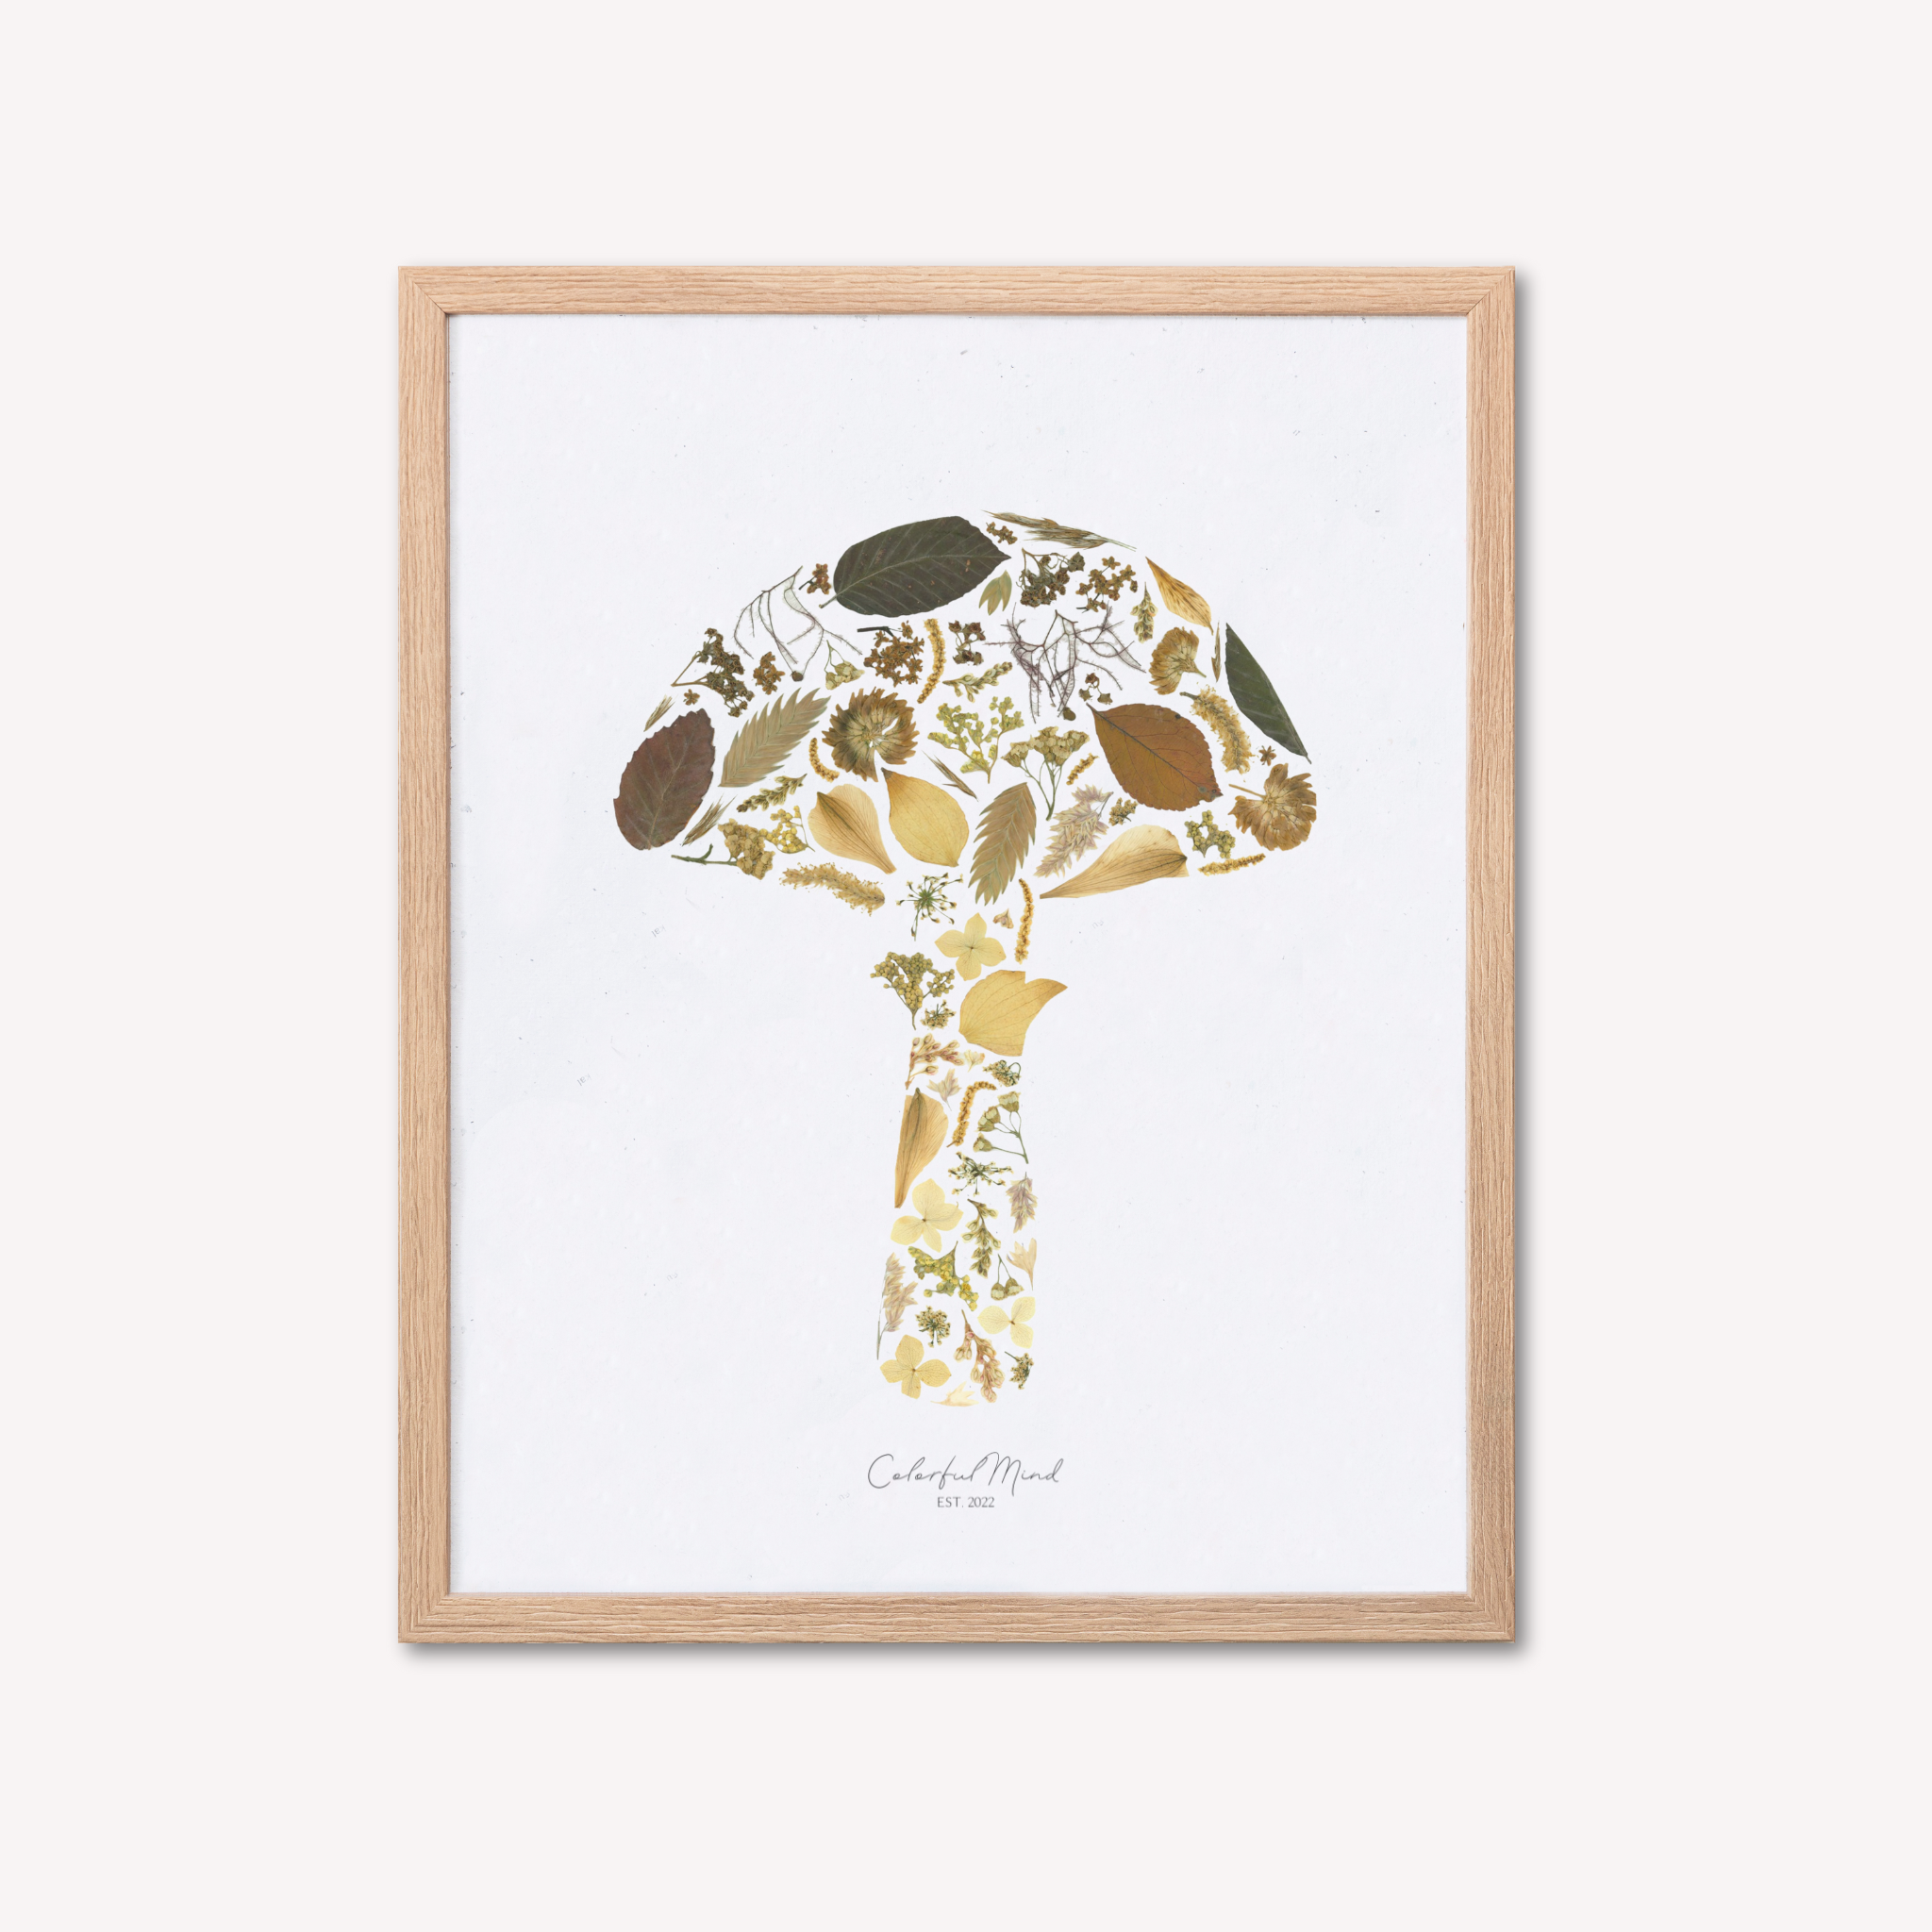 Colorful Mind Studio - Mushroom Flowers